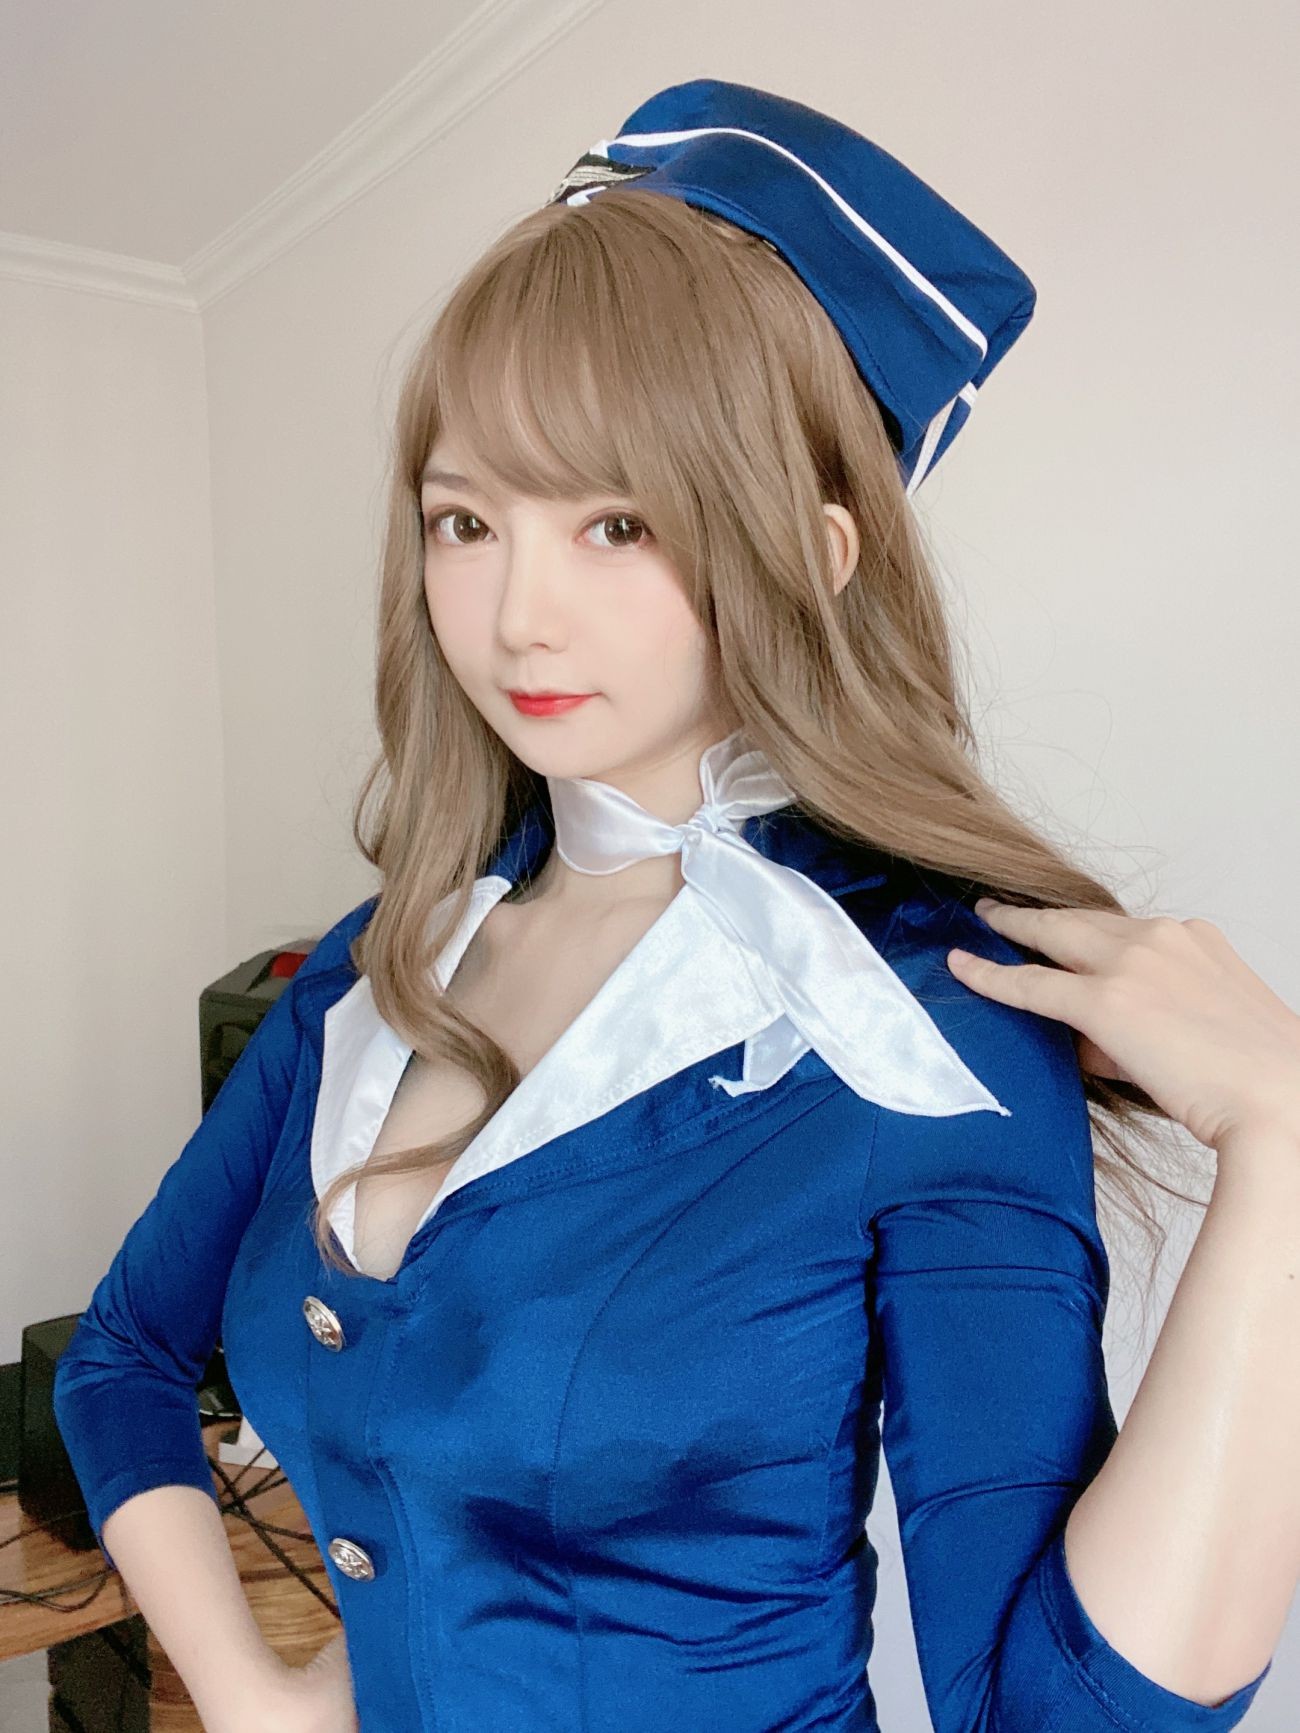 微博美少女51酱性感写真蓝色制服装 (28)